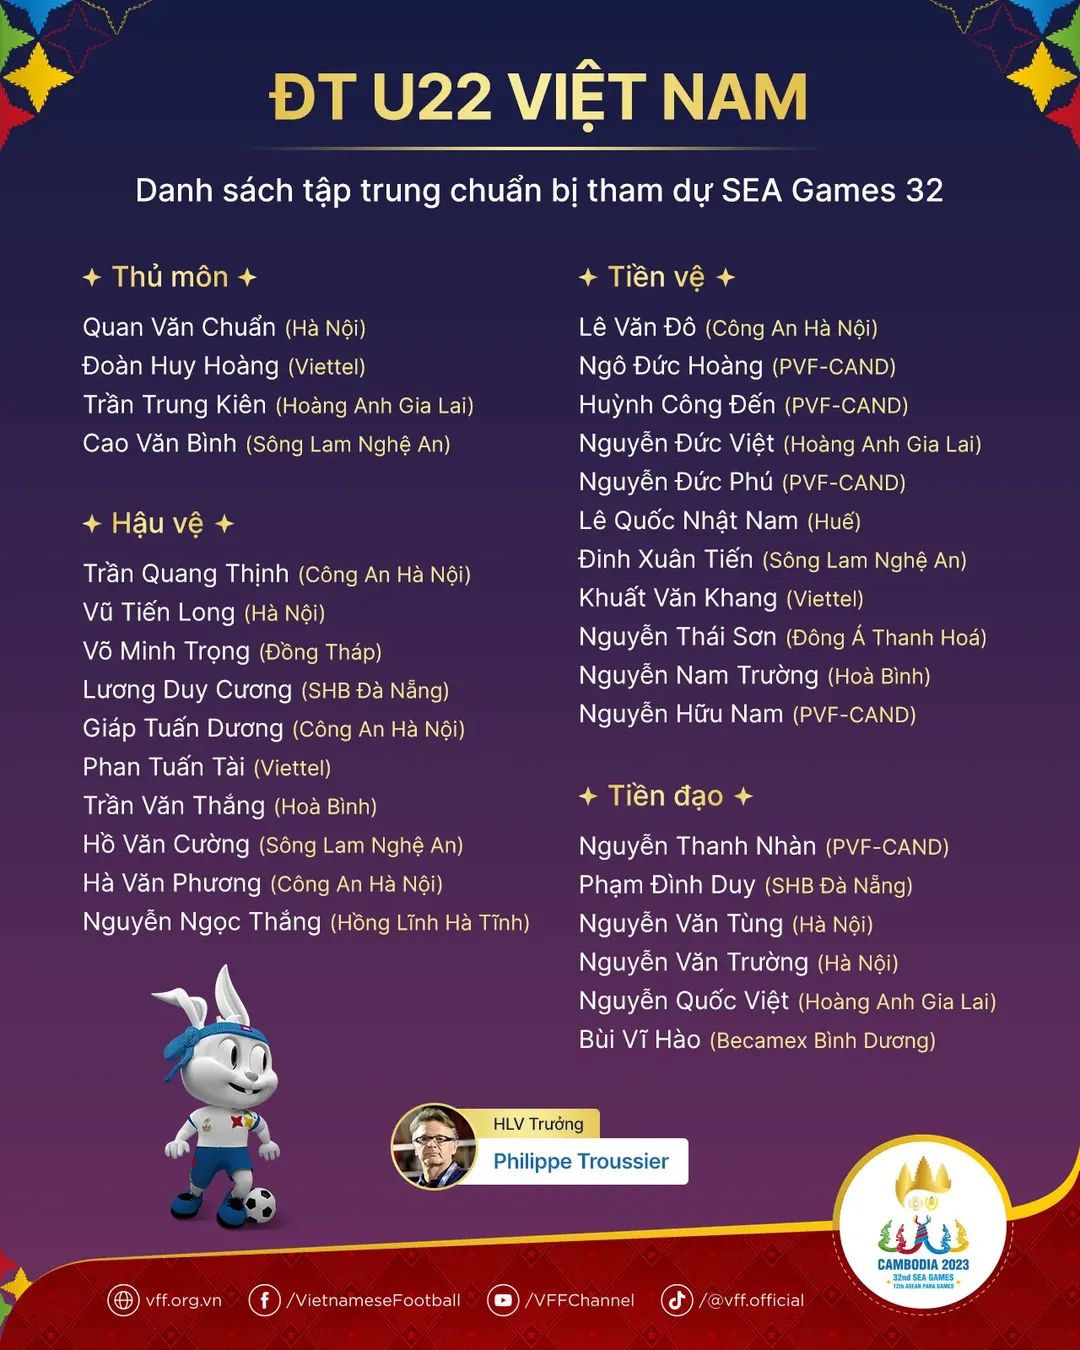 Danh sách 31 cầu thủ triệu tập chuẩn bị cho SEA Games 32